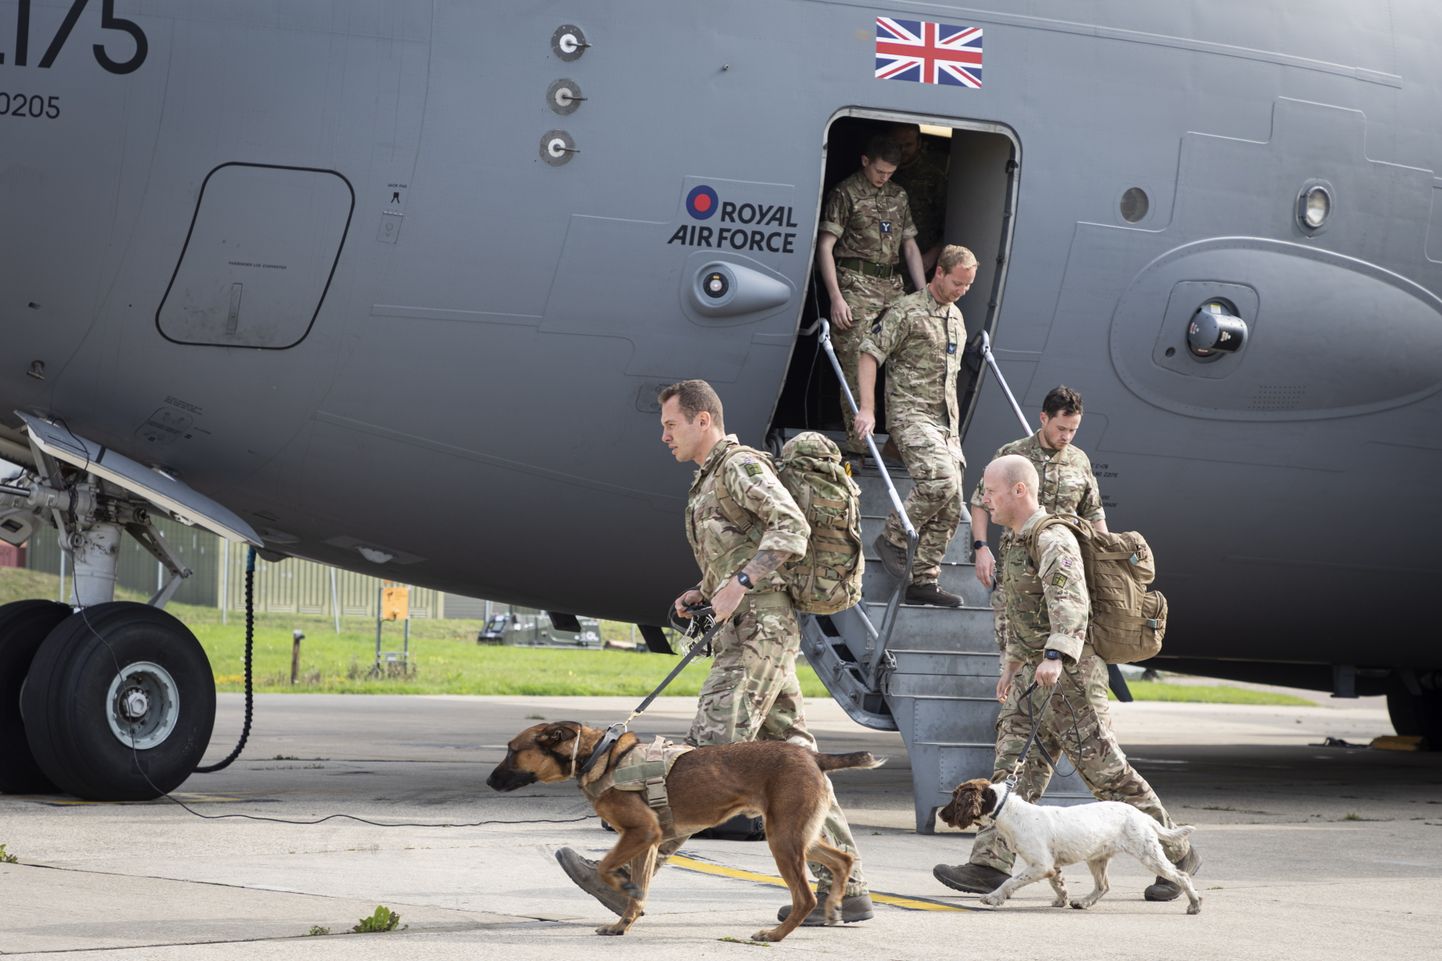 Briti sõjaväelased naasmas Afganistanist. Foto on illustratiivne.